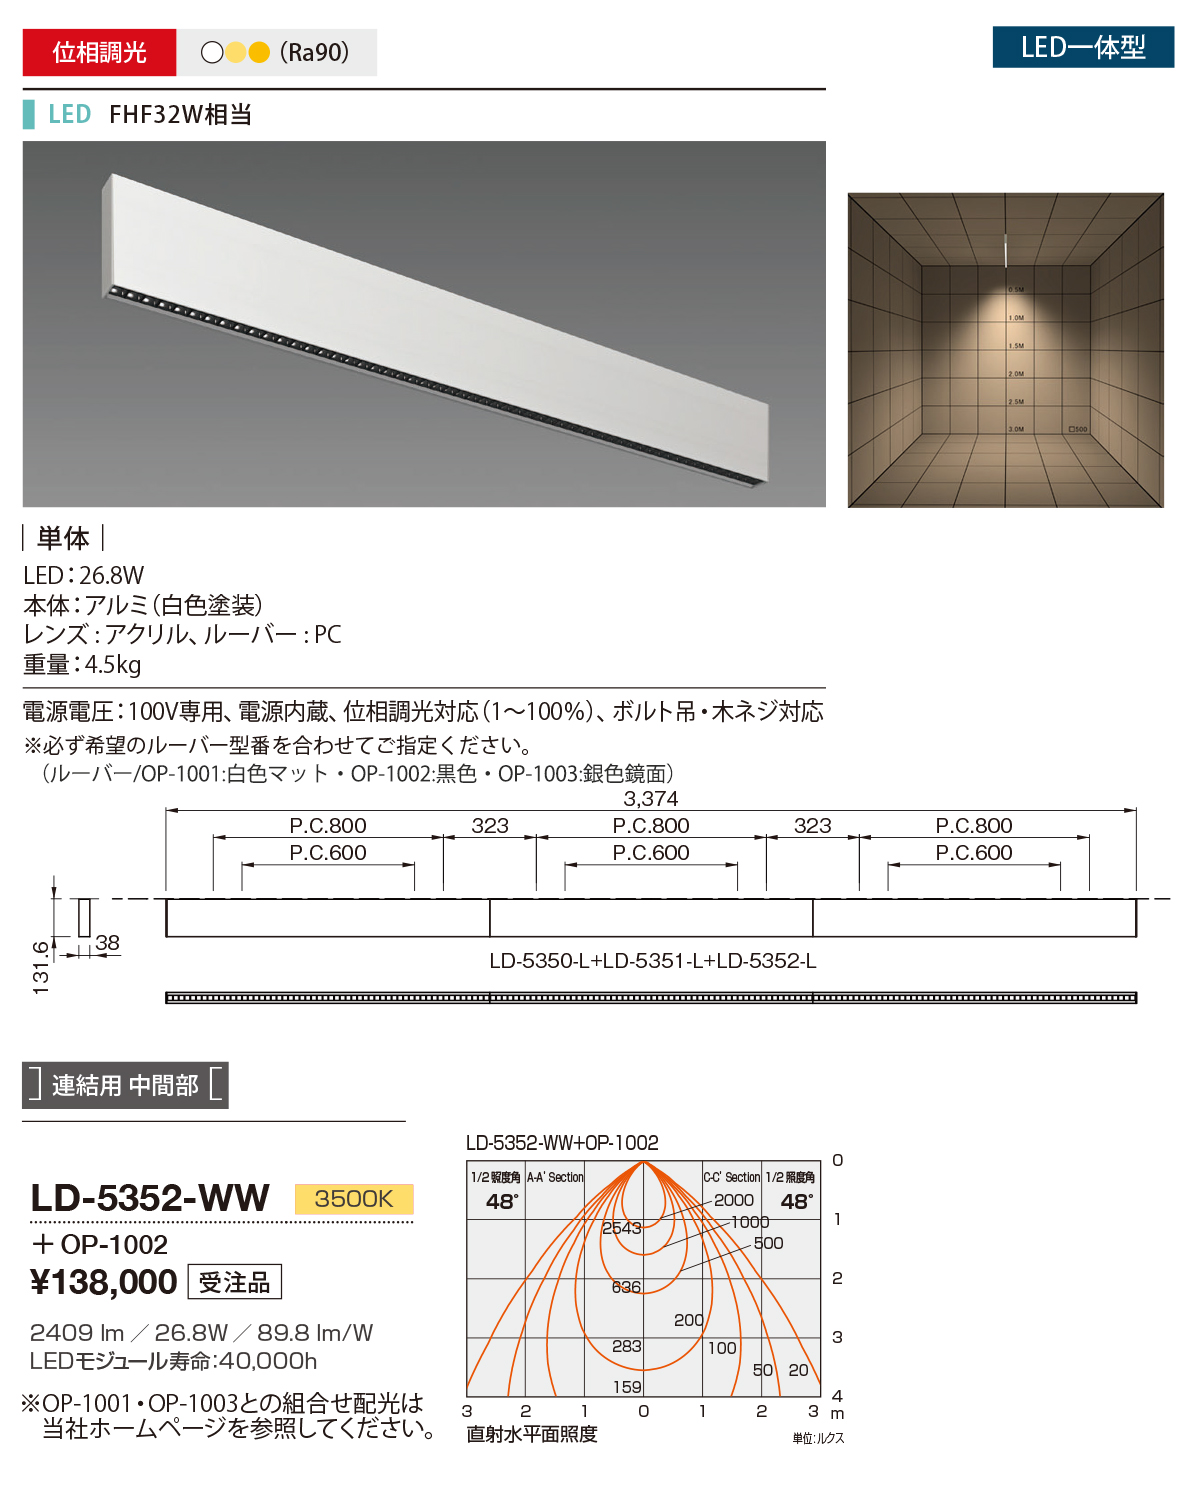 山田照明 LD-5352-WW LEDの照明器具なら激安通販販売のベストプライスへ